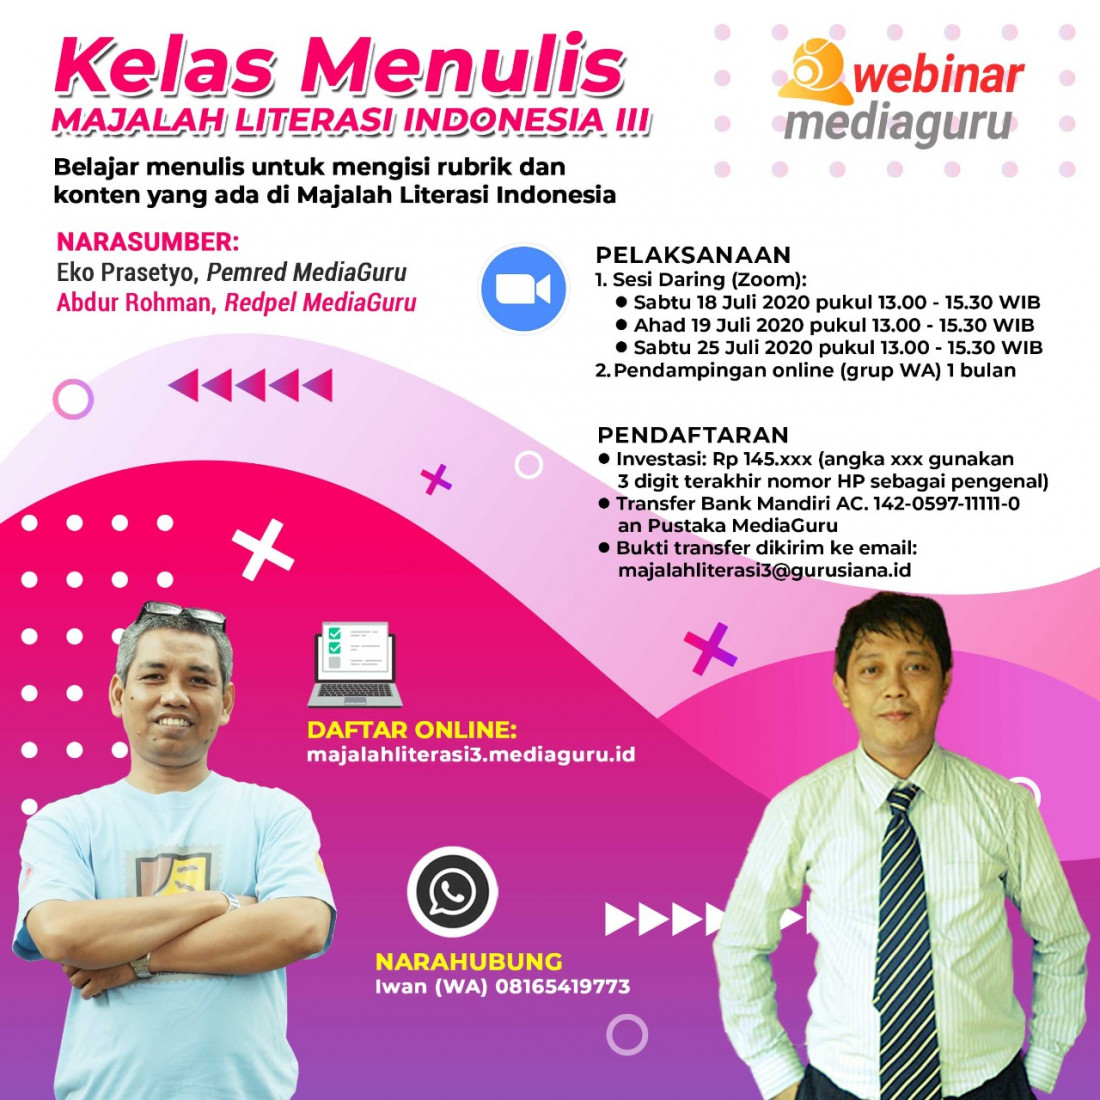 Kelas Menulis Majalah Literasi Indonesia III (18 - 25 Juli 2020)